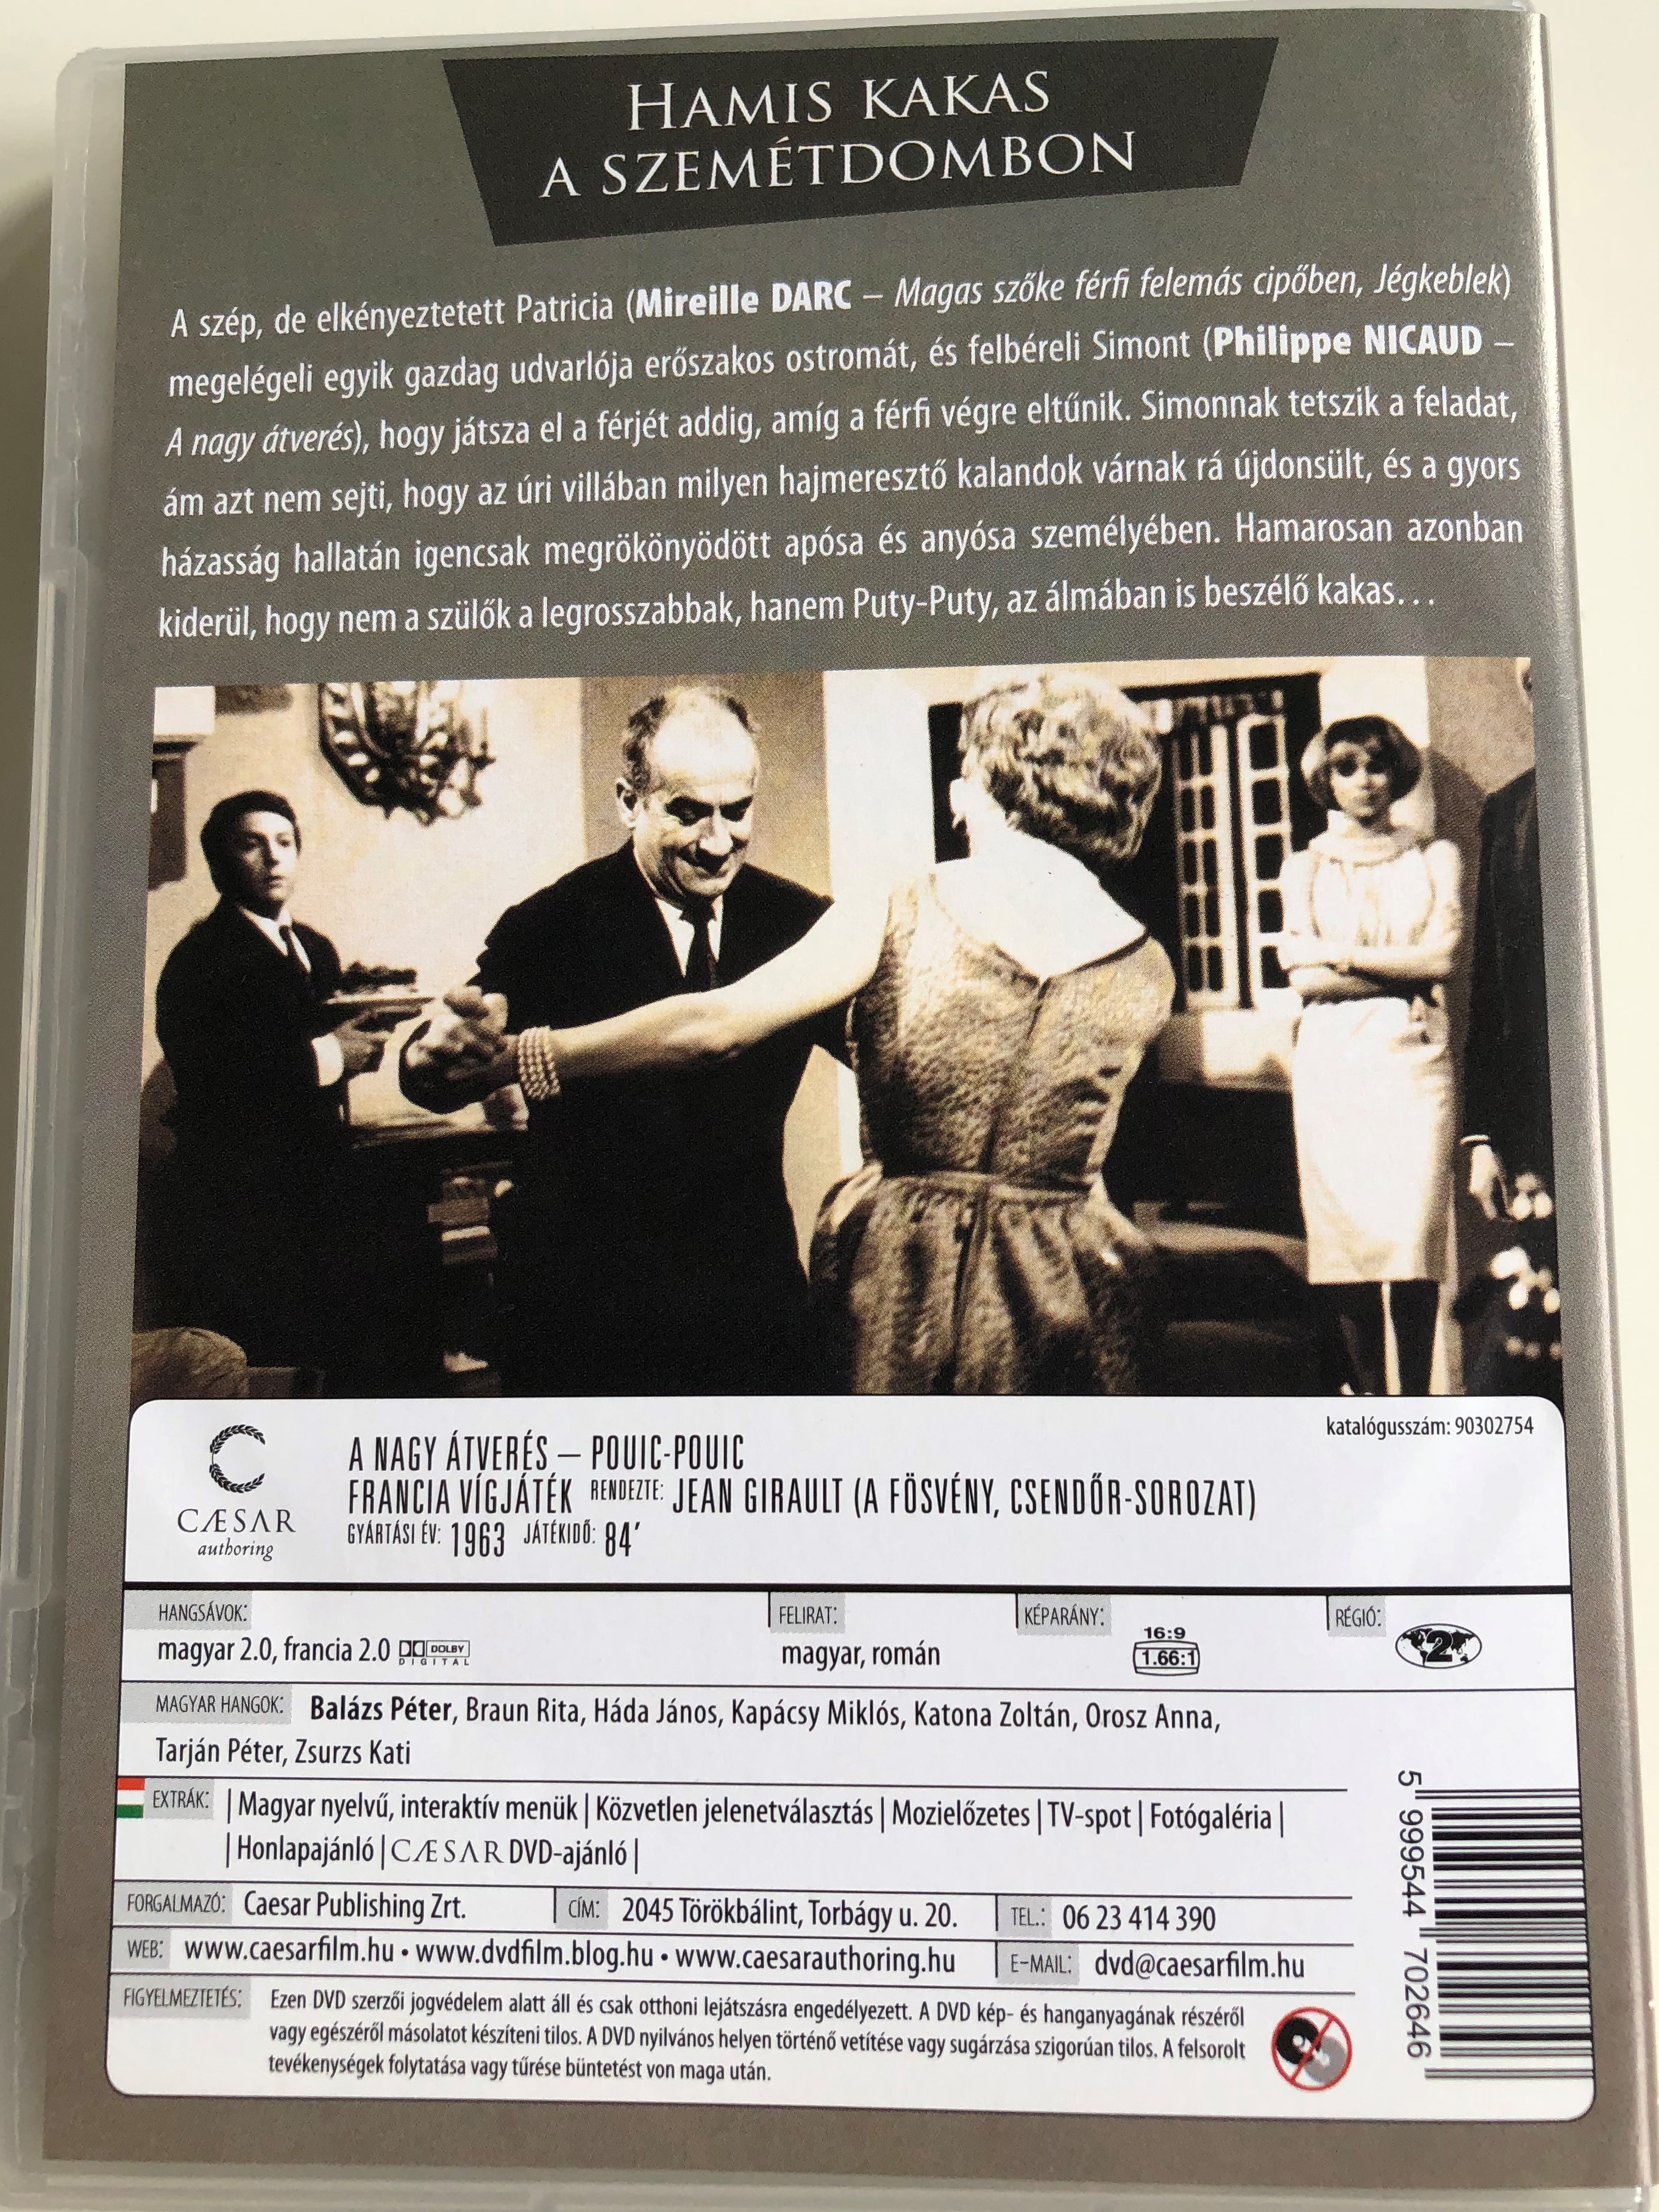 Pouic-Pouic DVD 1963 A nagy átverés / Directed by Jean Girault / Starring:  Louis de funés, Mireille Darc, Philippe Nicaud - bibleinmylanguage